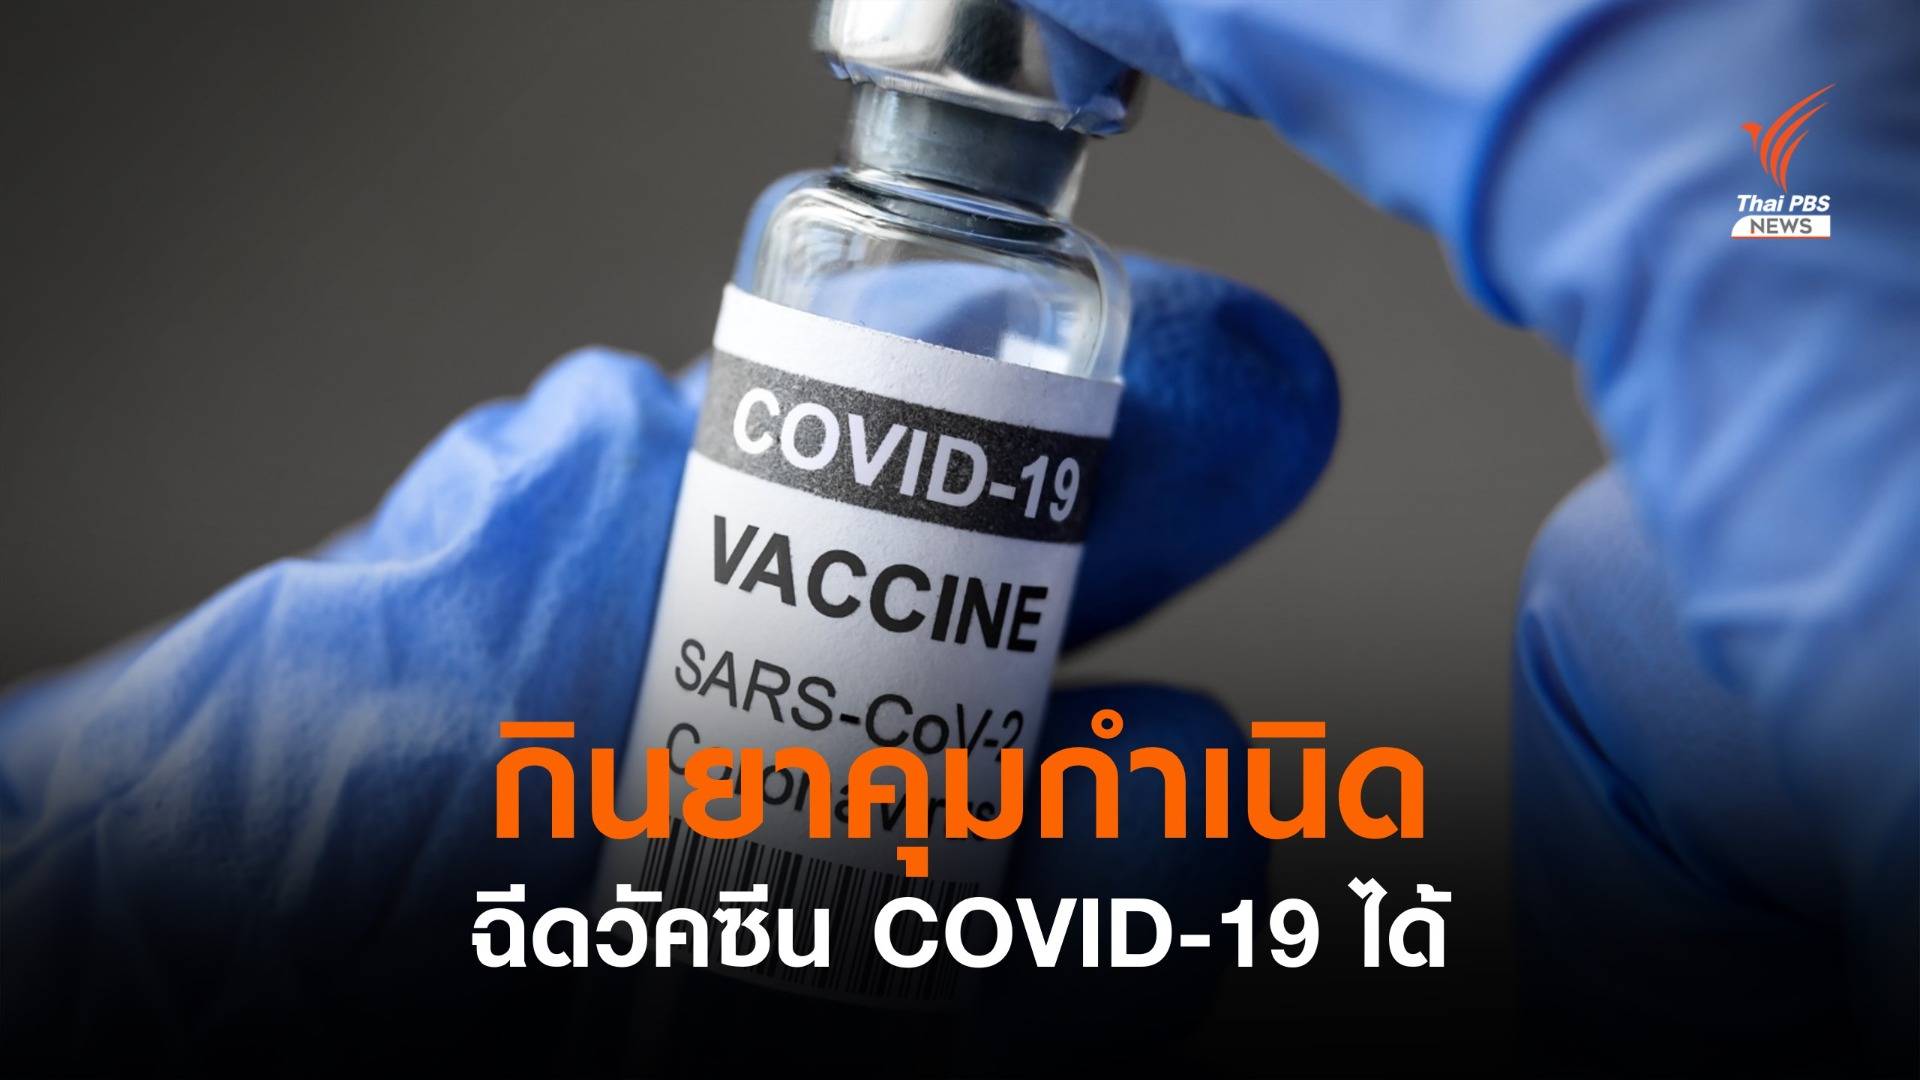 ราชวิทยาลัยสูตินรีแพทย์ฯ ยืนยันกินยาคุมฉีดวัคซีนโควิดได้  